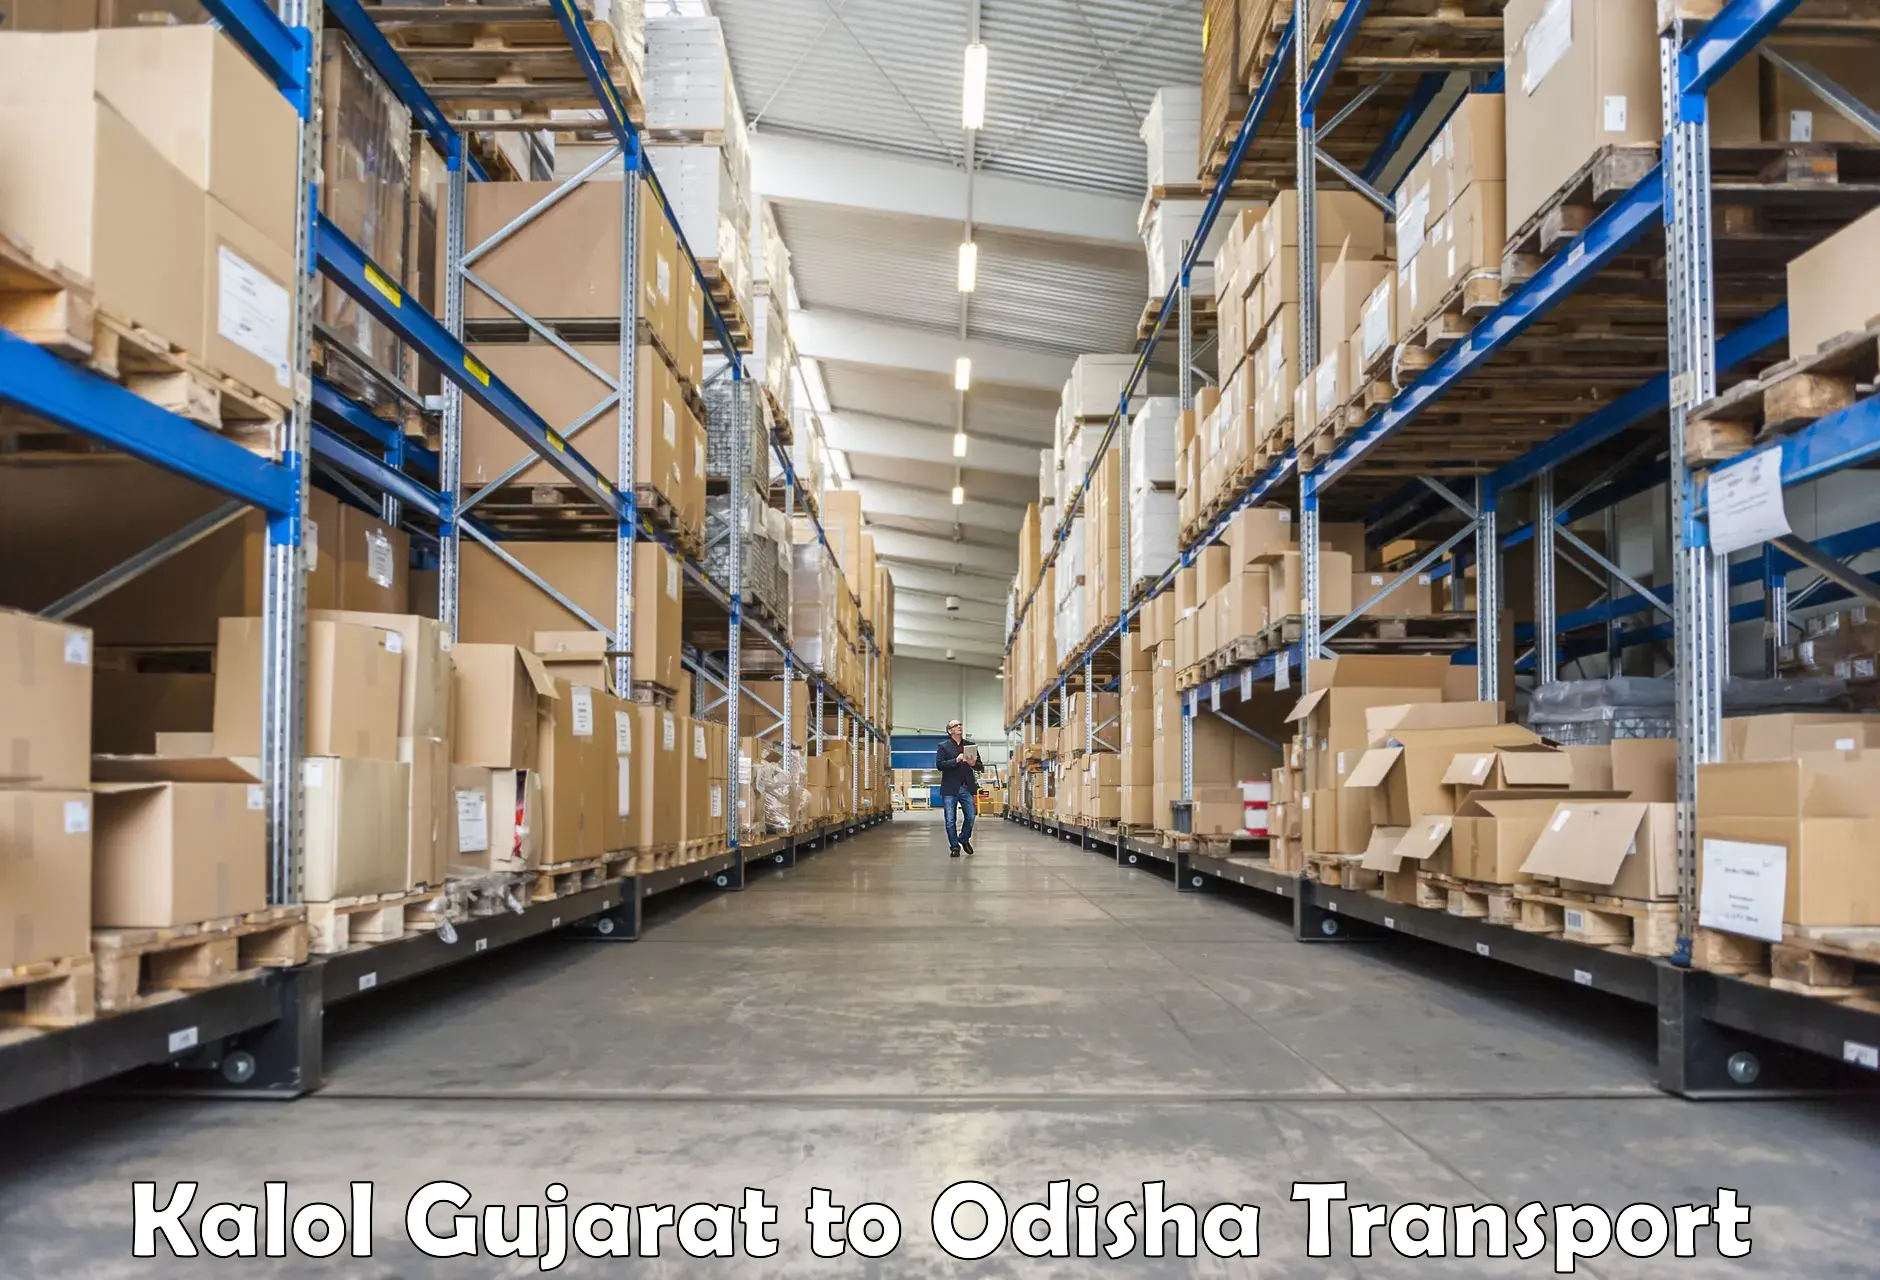 Daily transport service Kalol Gujarat to Bhubaneswar